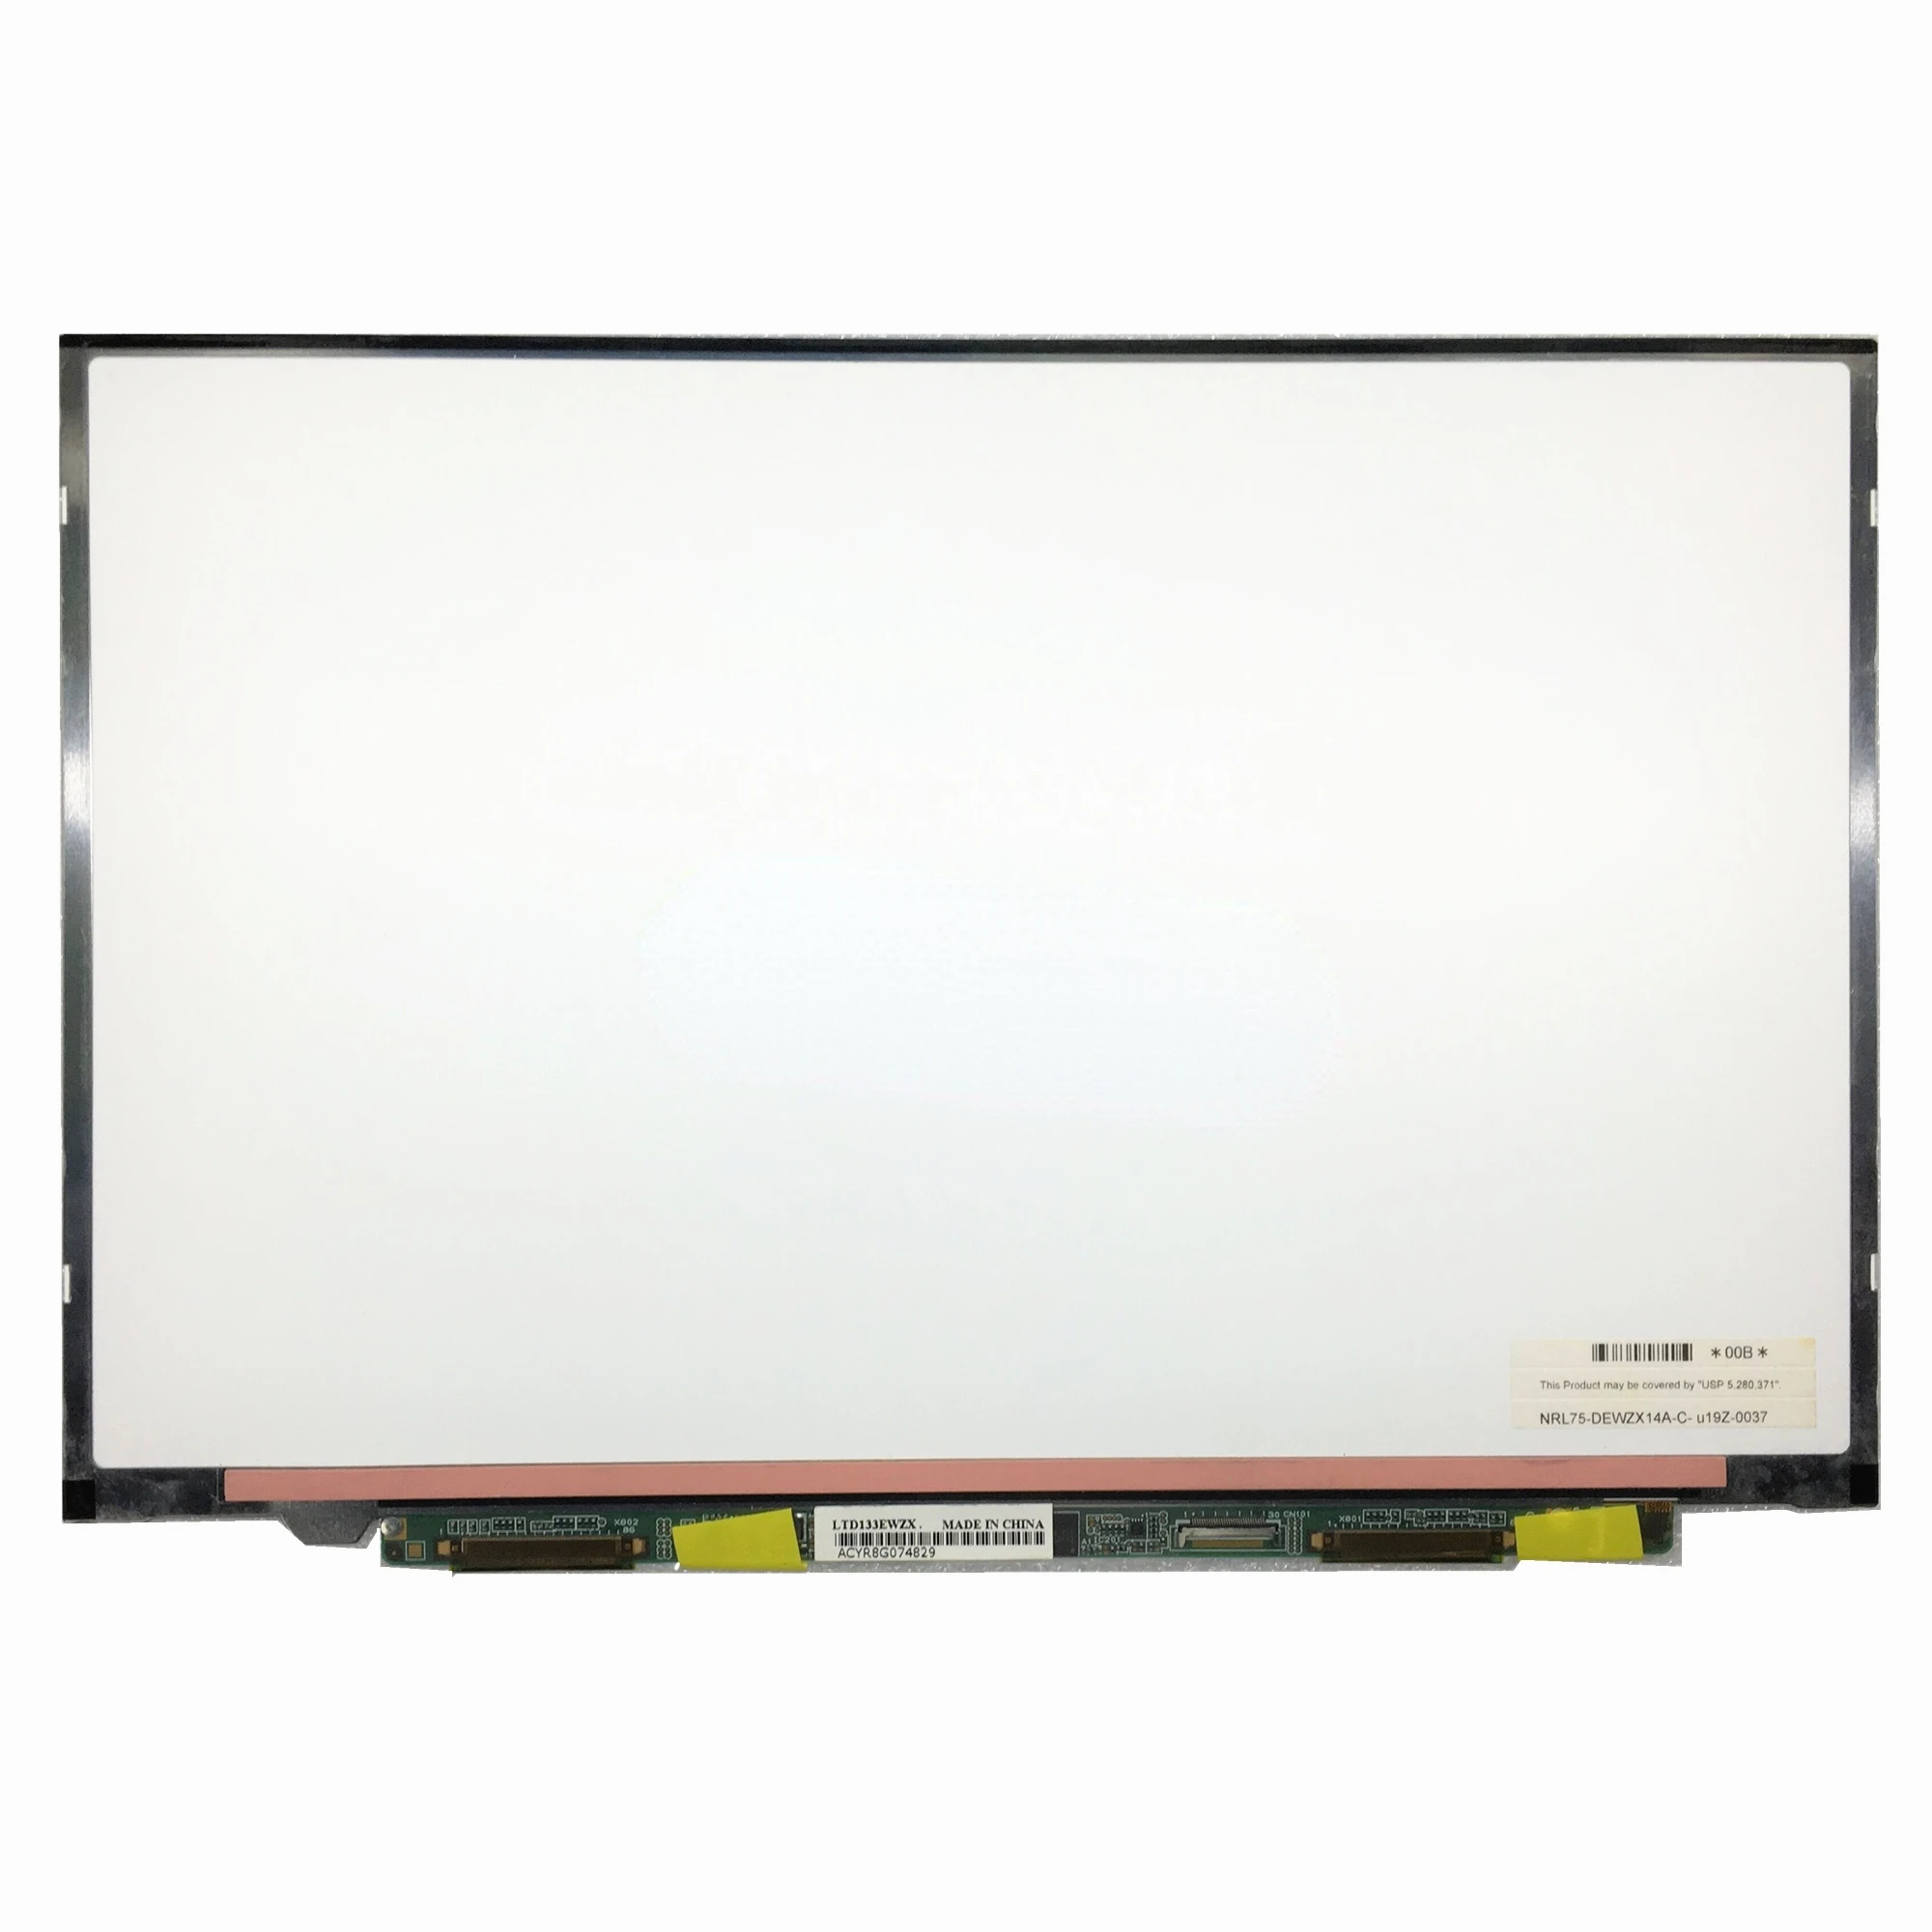 LTD133EWZX LTN133AT05 For SONY VGN-SZ36 GN-SZ16 GN-SZ17 Laptop LCD Screen Panel 13.3 inch 1280*800